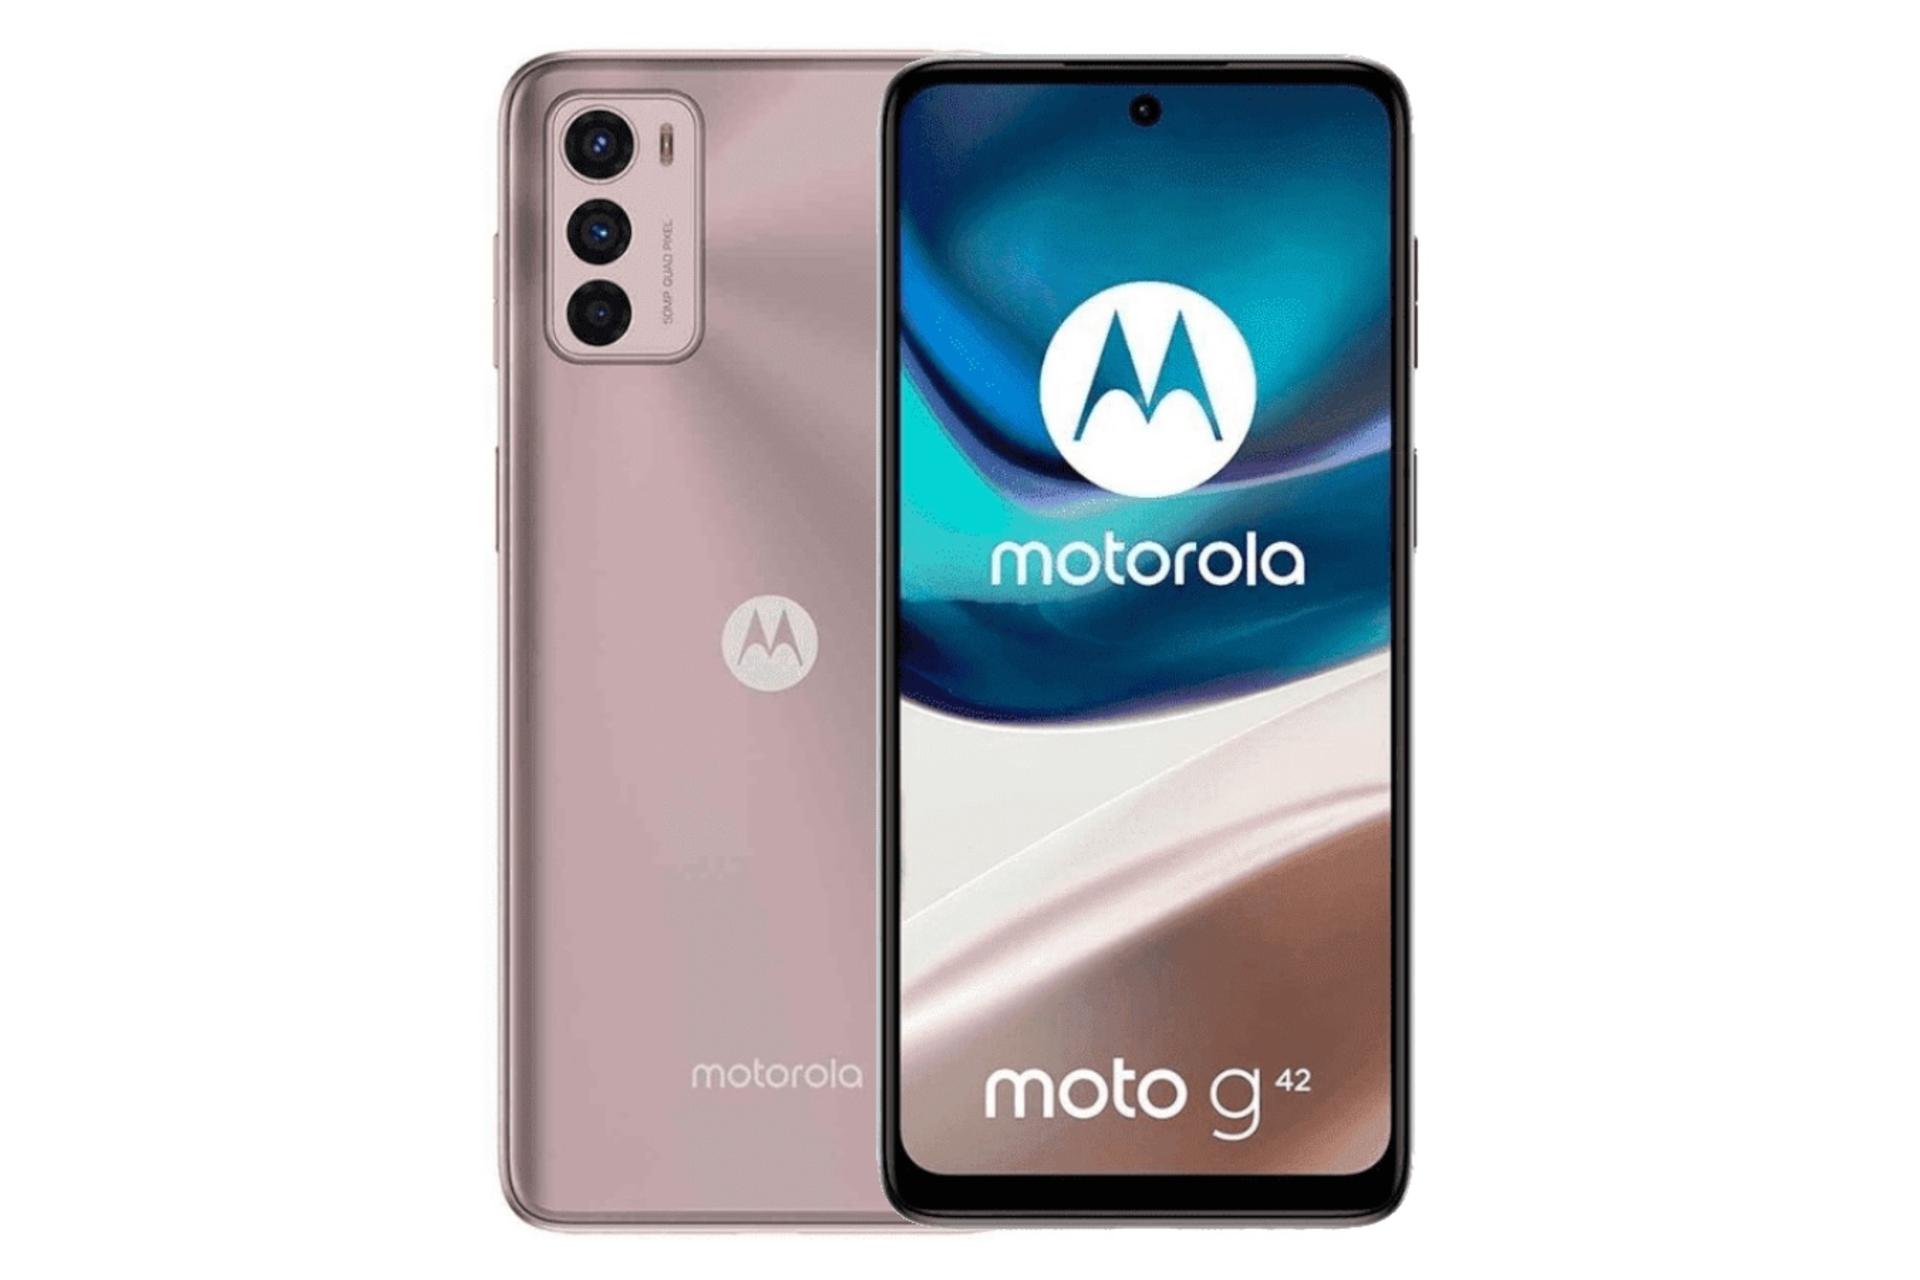 گوشی موبایل موتو G42 موتورولا / Motorola Moto G42 رزگلد